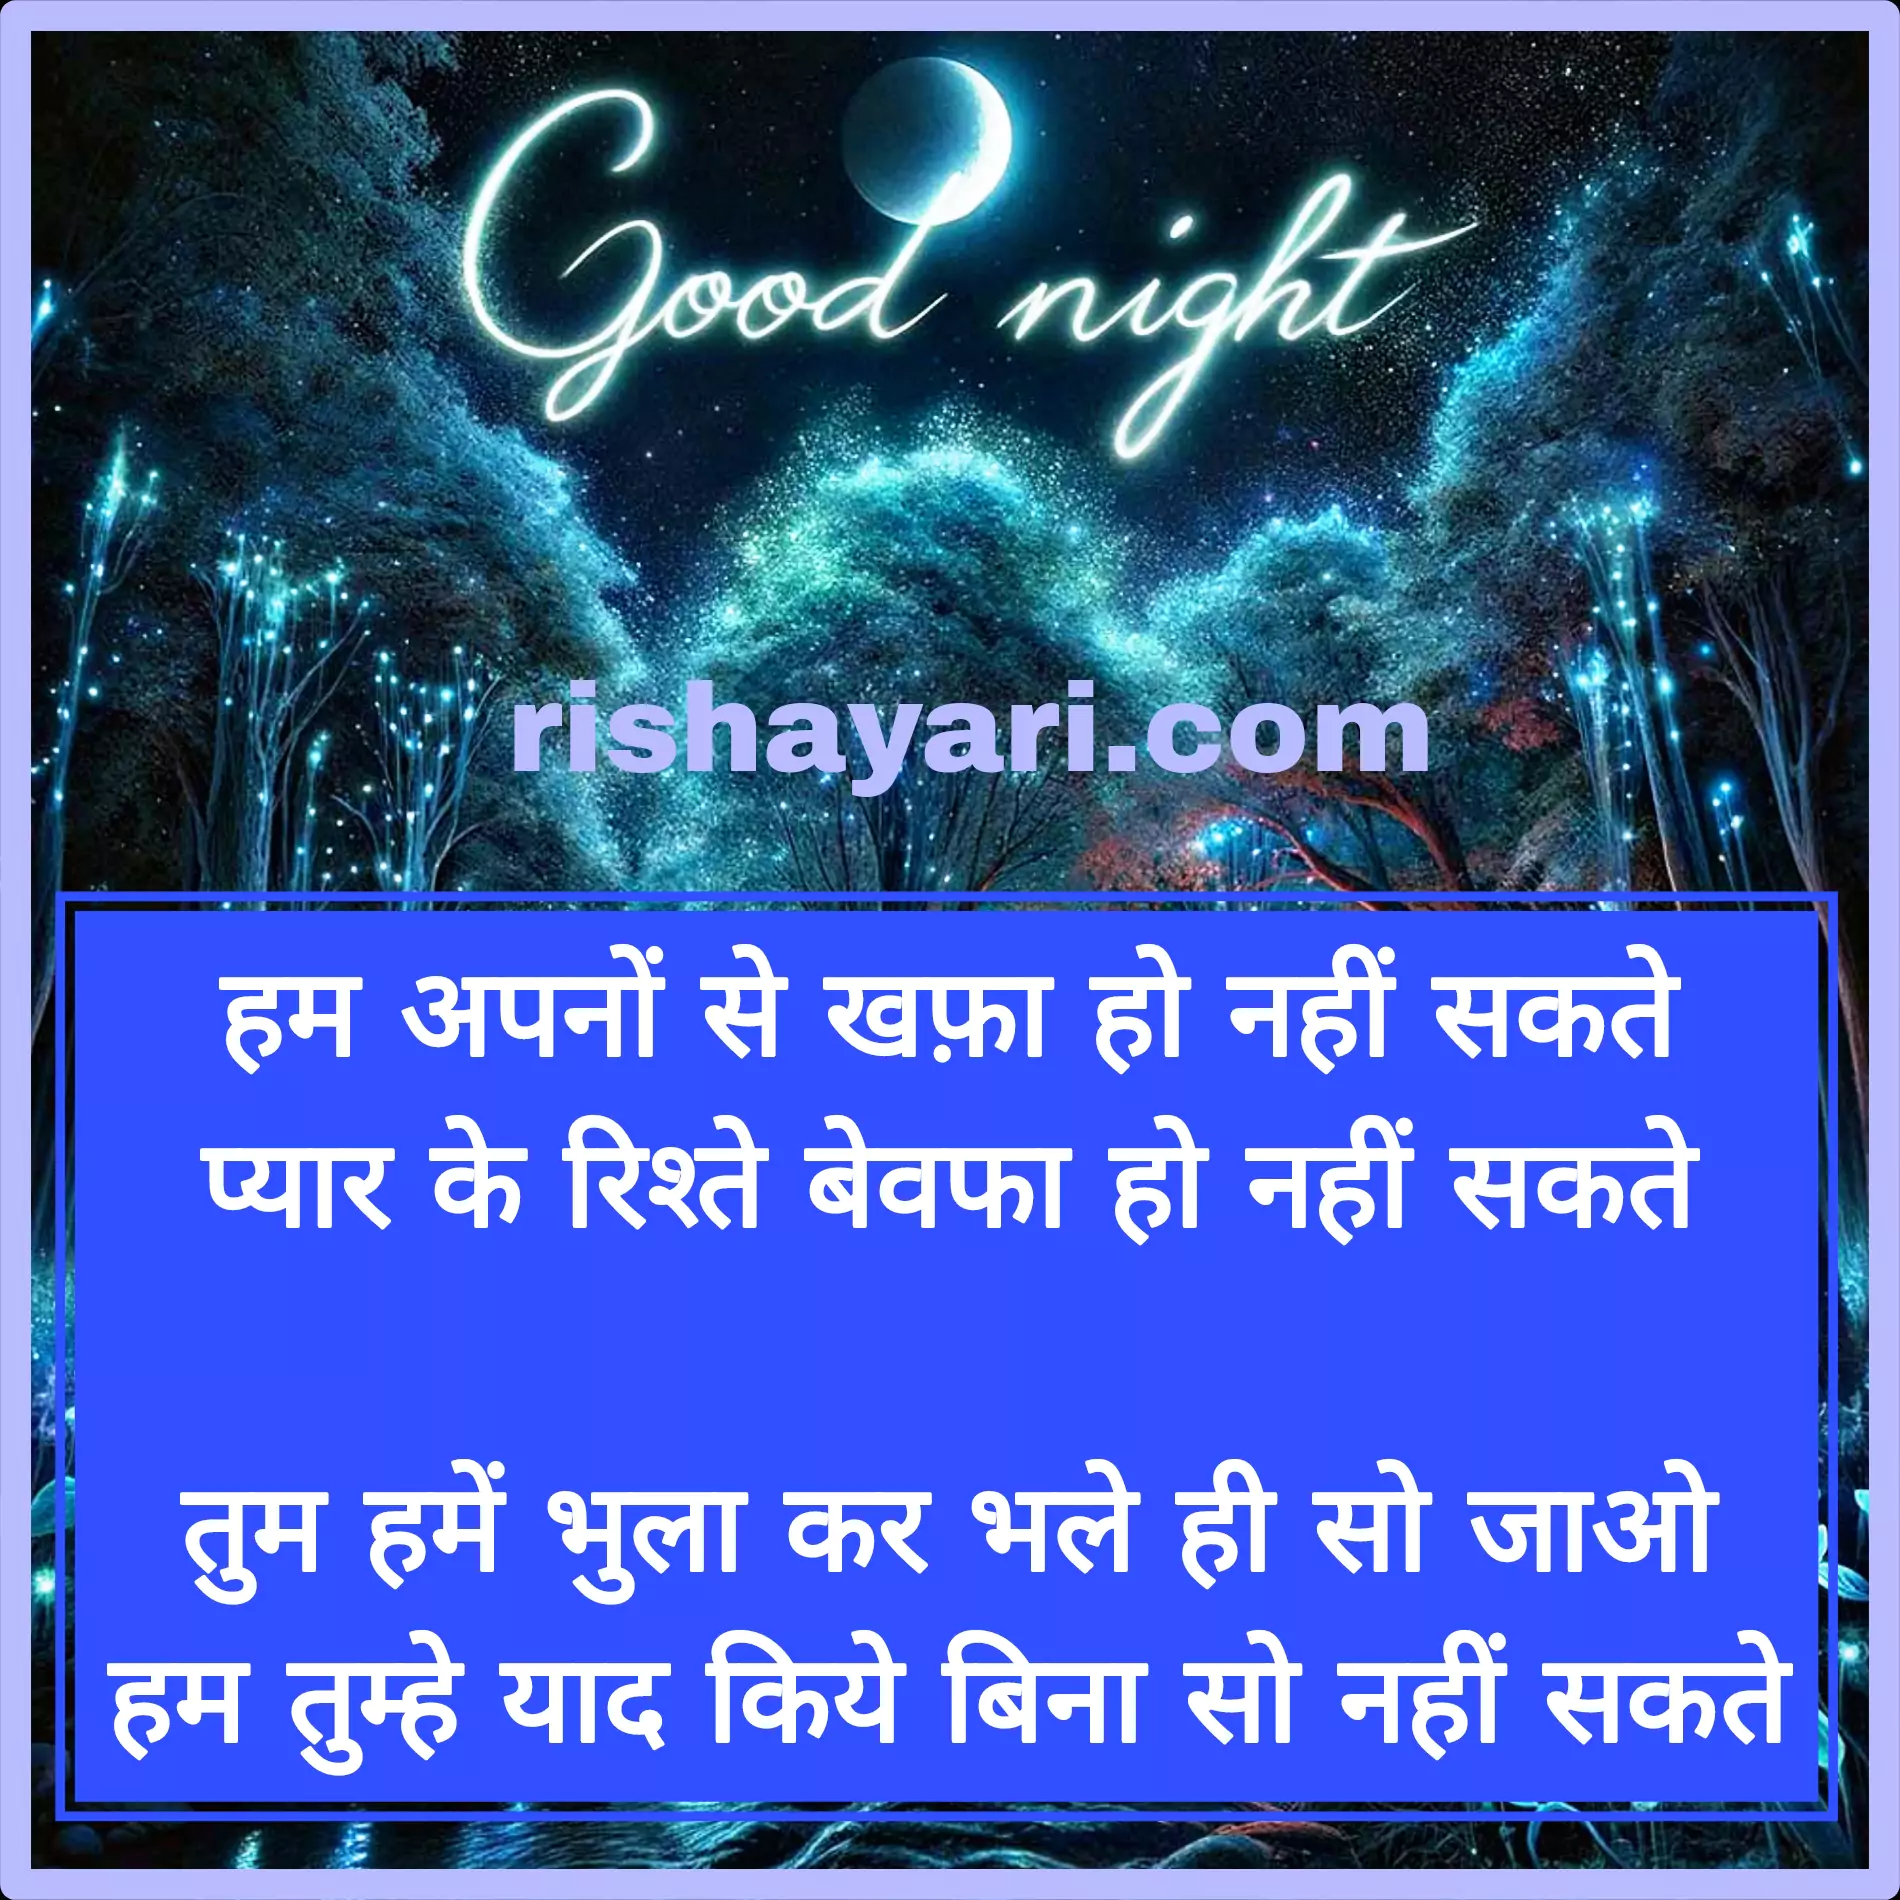 hindi shayari images for good night love